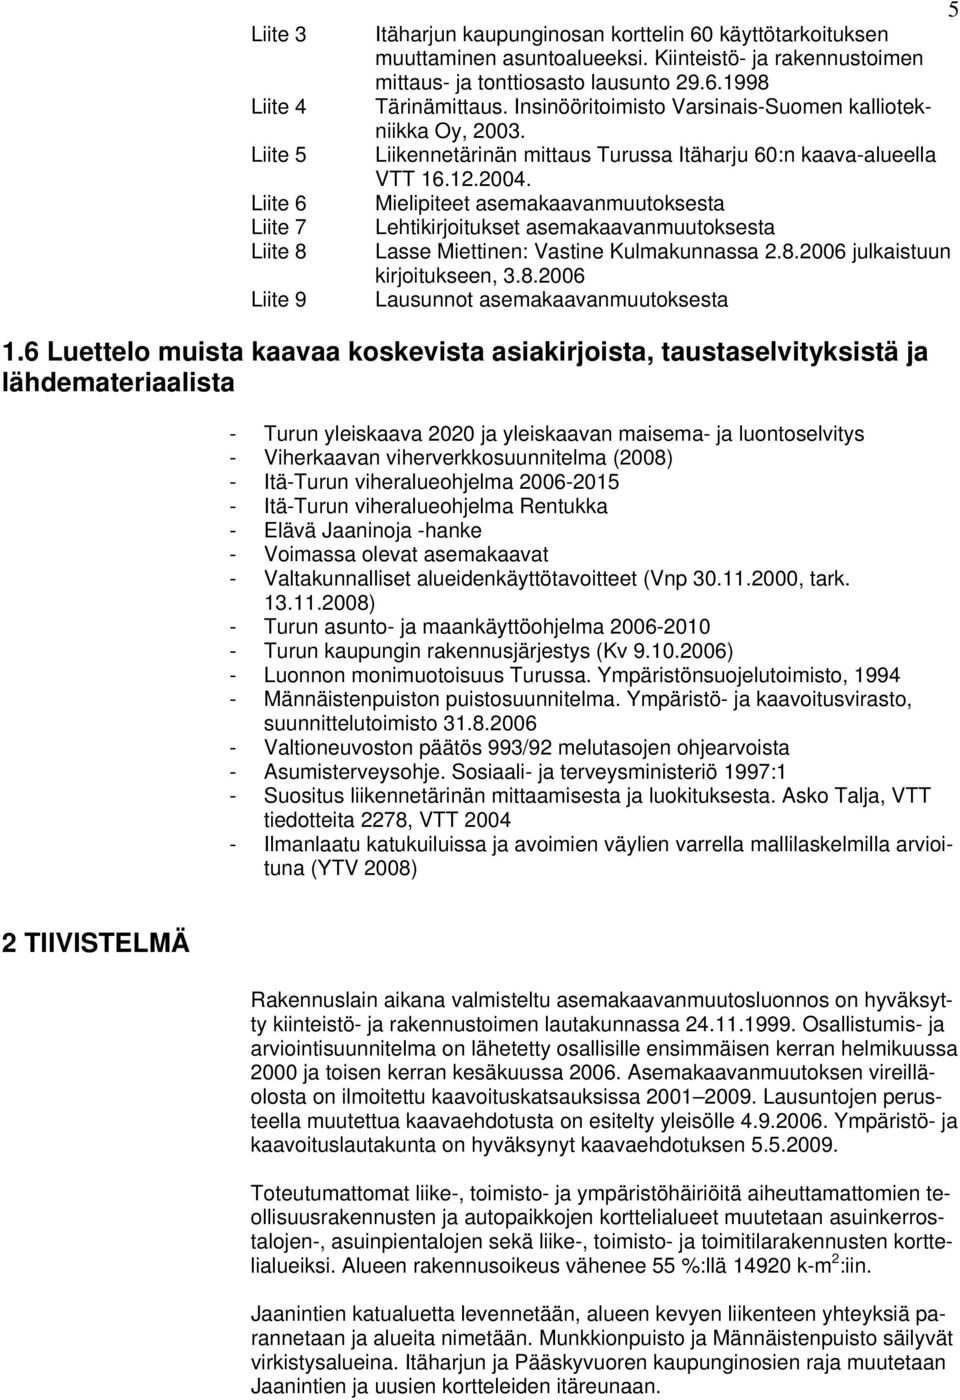 Liikennetärinän mittaus Turussa Itäharju 60:n kaava-alueella VTT 16.12.2004. Mielipiteet asemakaavanmuutoksesta Lehtikirjoitukset asemakaavanmuutoksesta Lasse Miettinen: Vastine Kulmakunnassa 2.8.